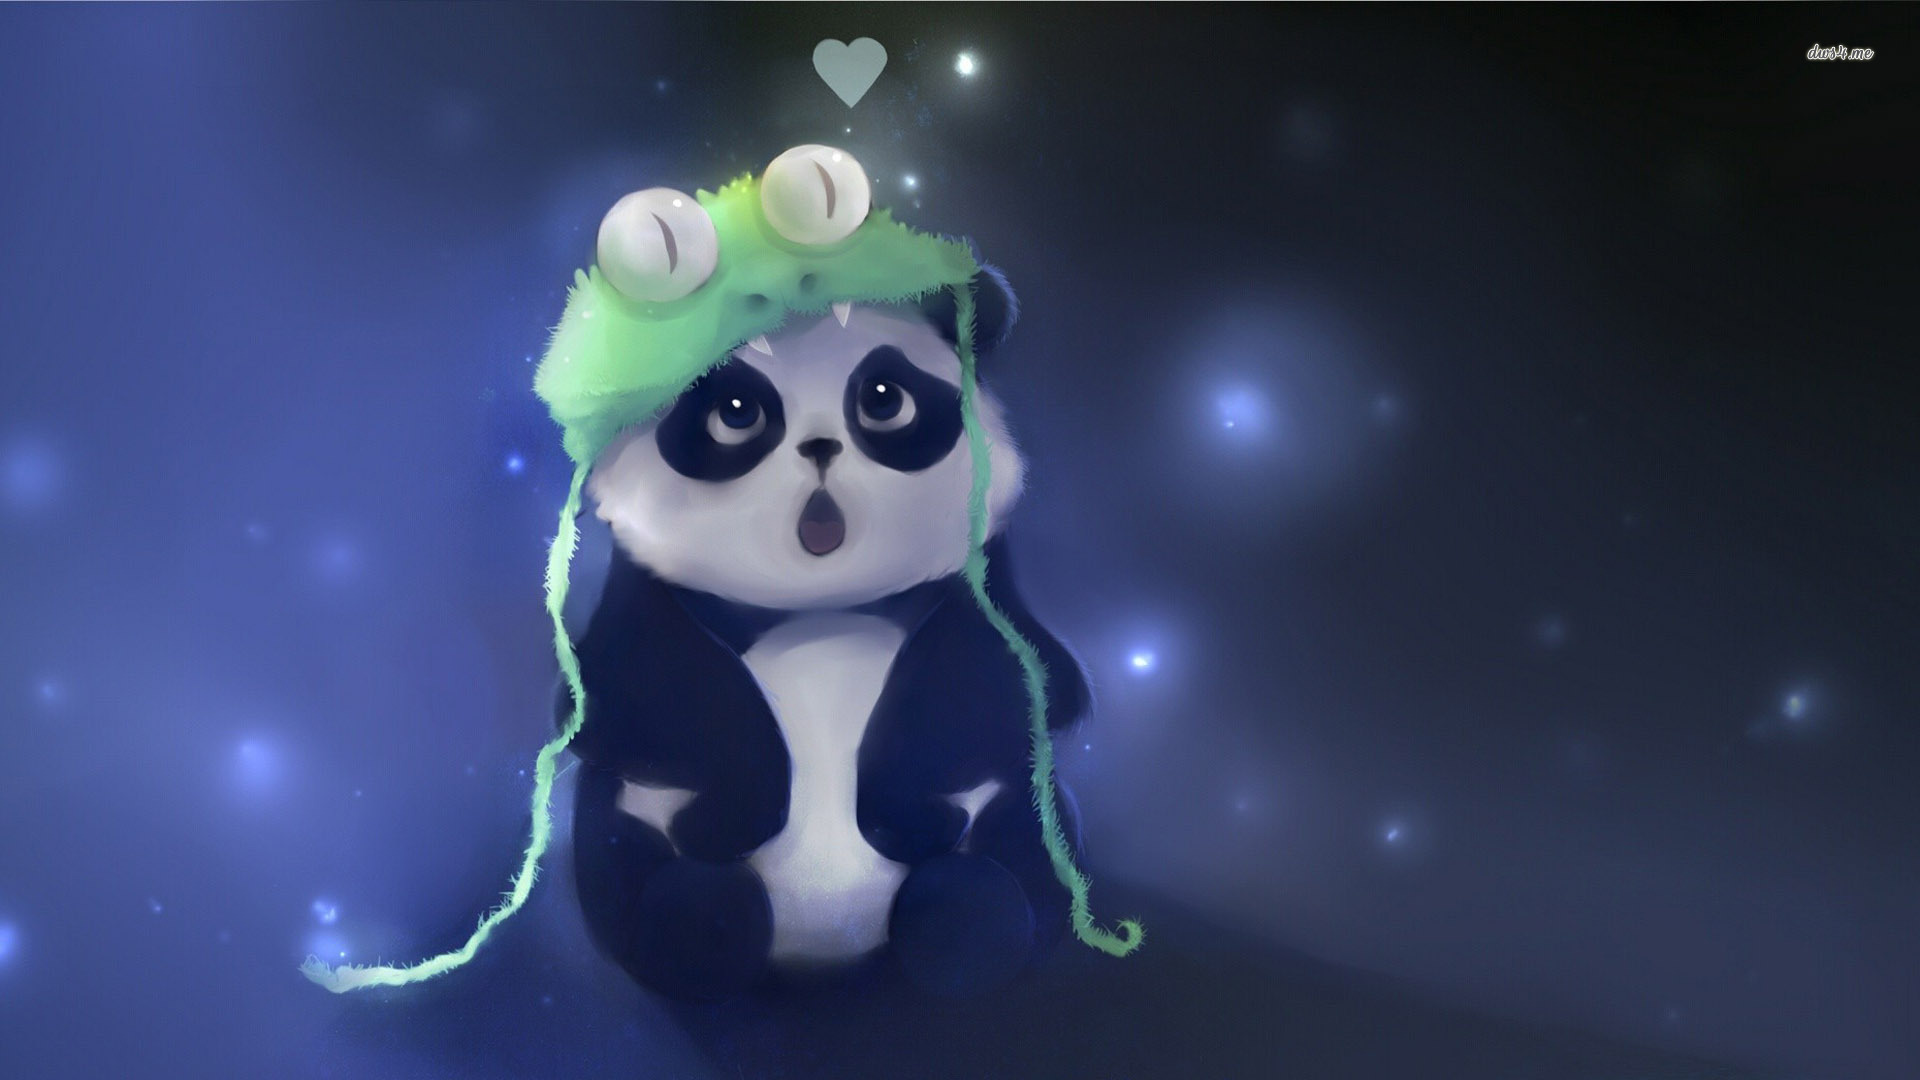 Cute Panda fond ecran hd 1920x1080